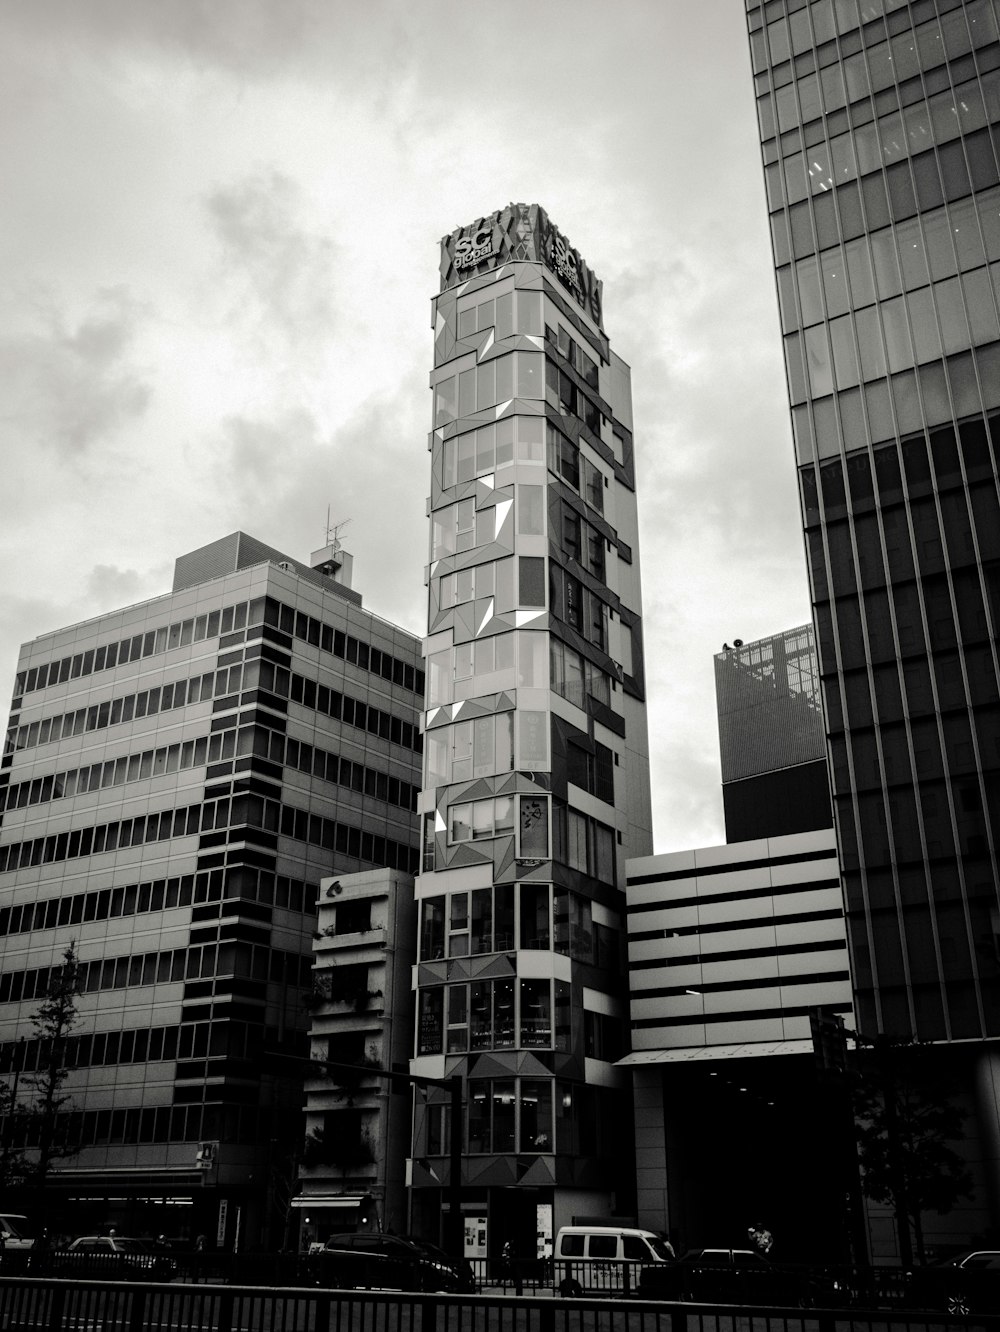 Photo en niveaux de gris des bâtiments